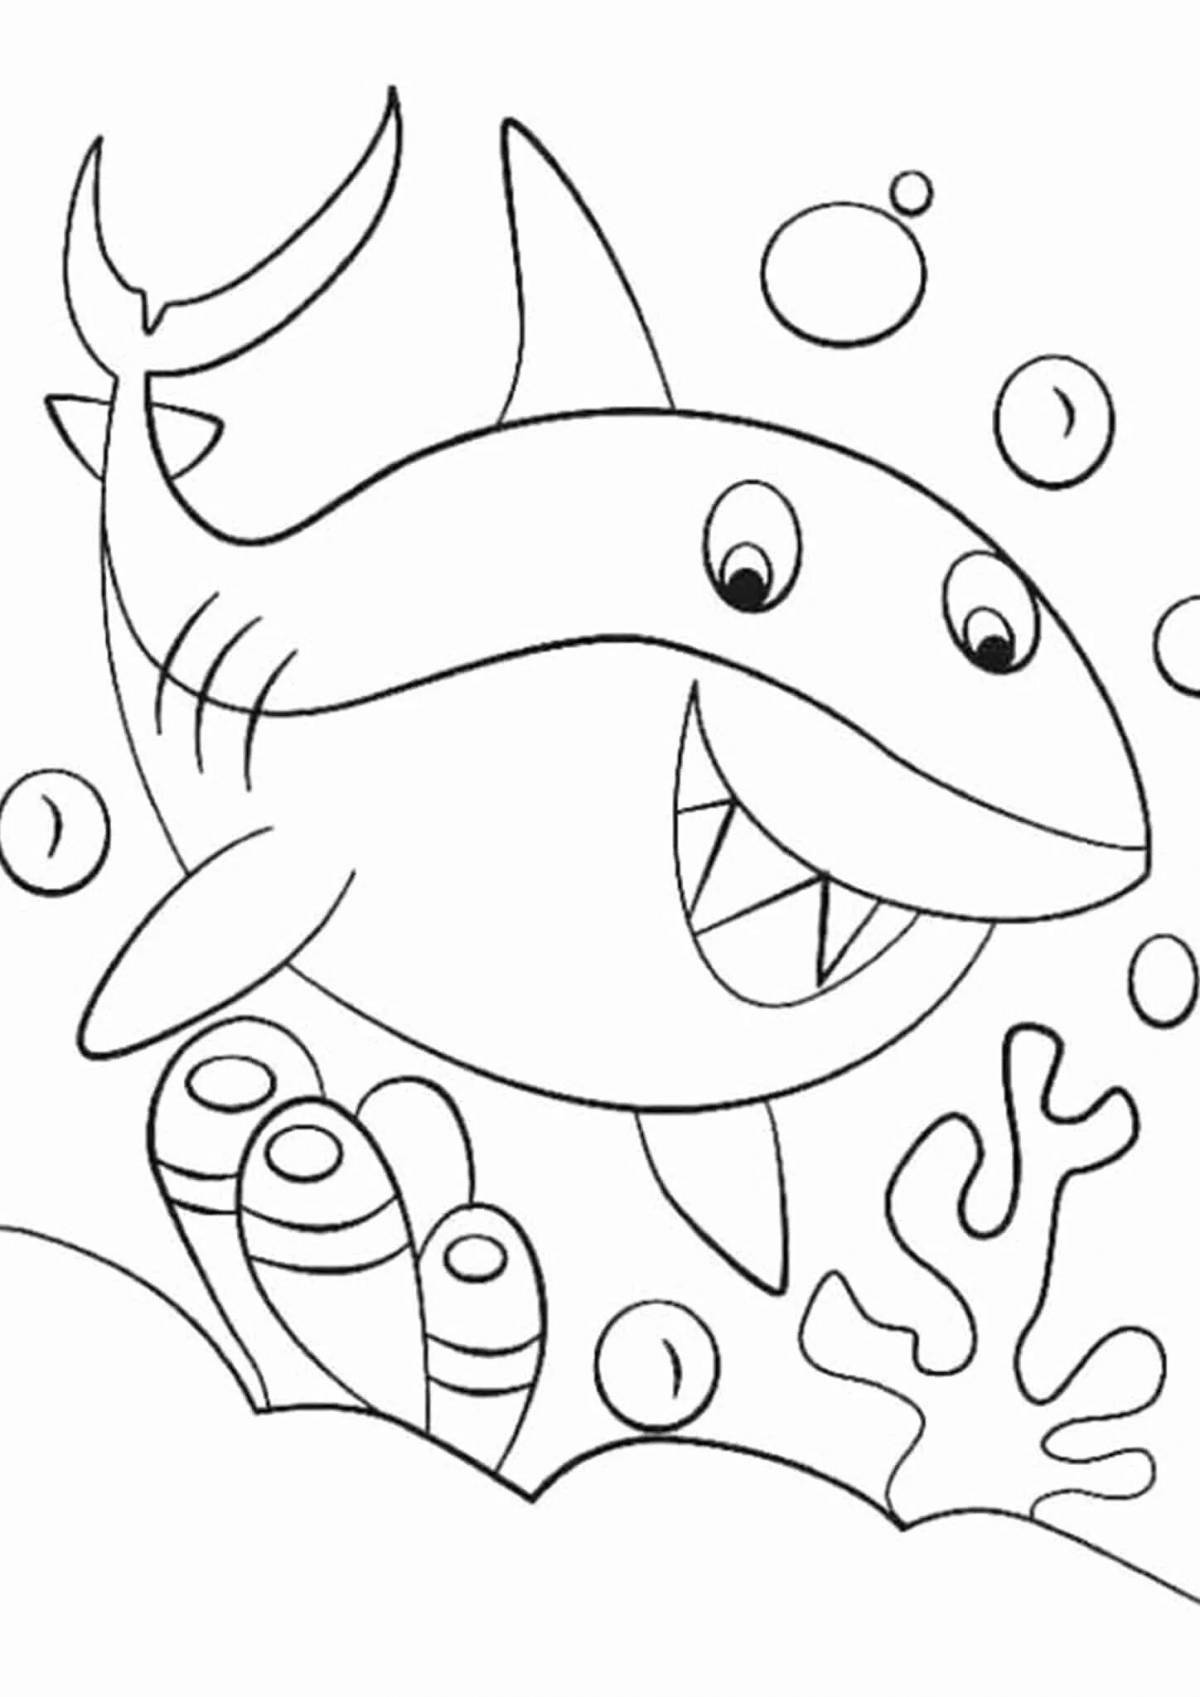 Humorous shark coloring book for kids